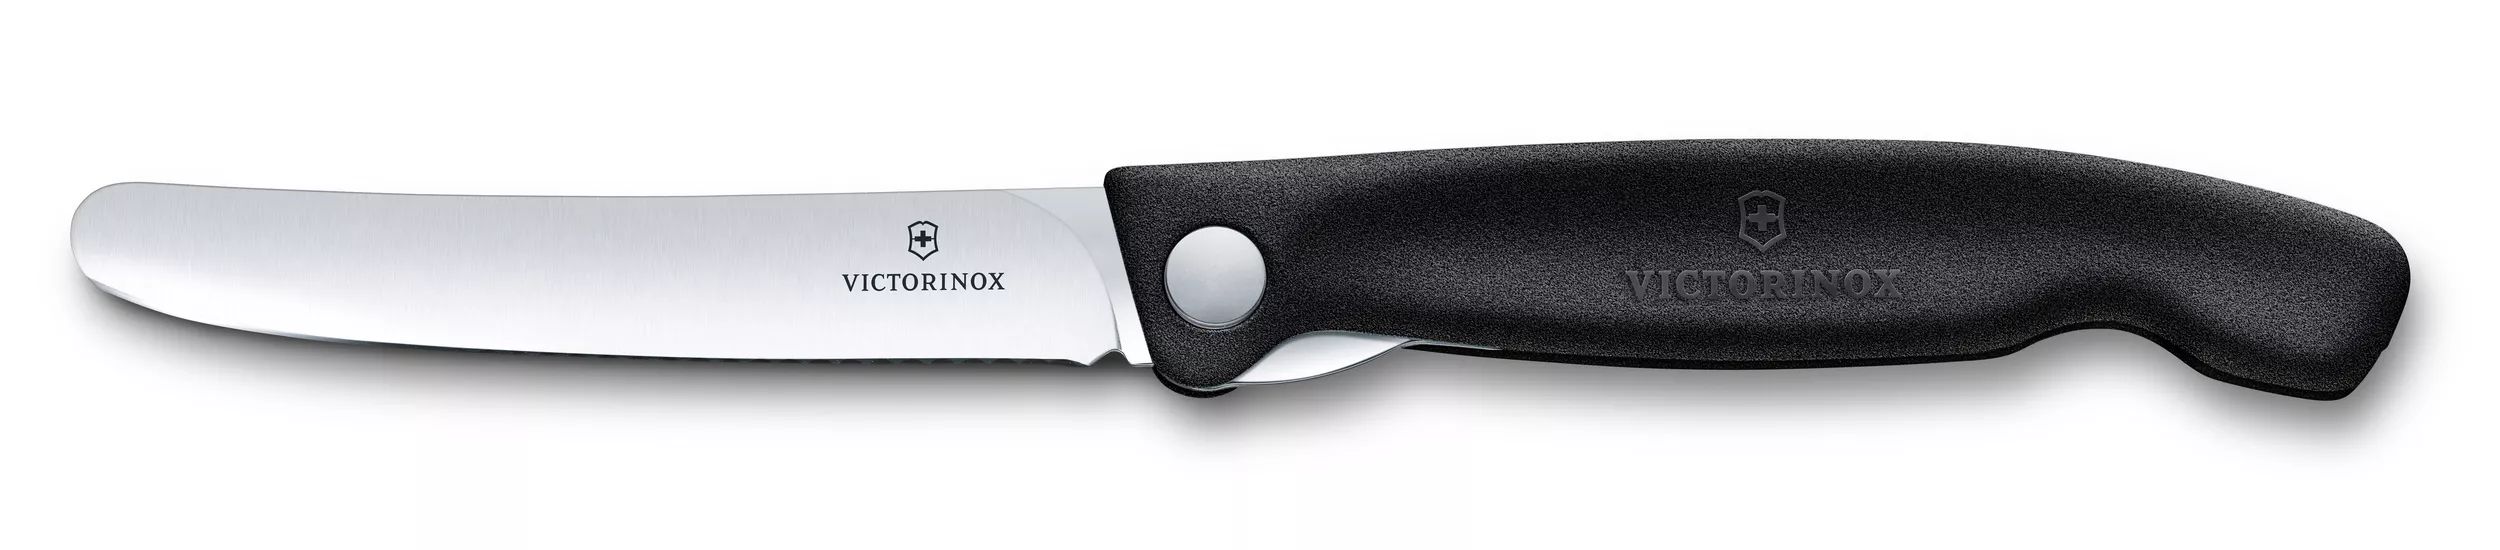 Couteau de pique-nique Swiss Classic - 6.7803.FB